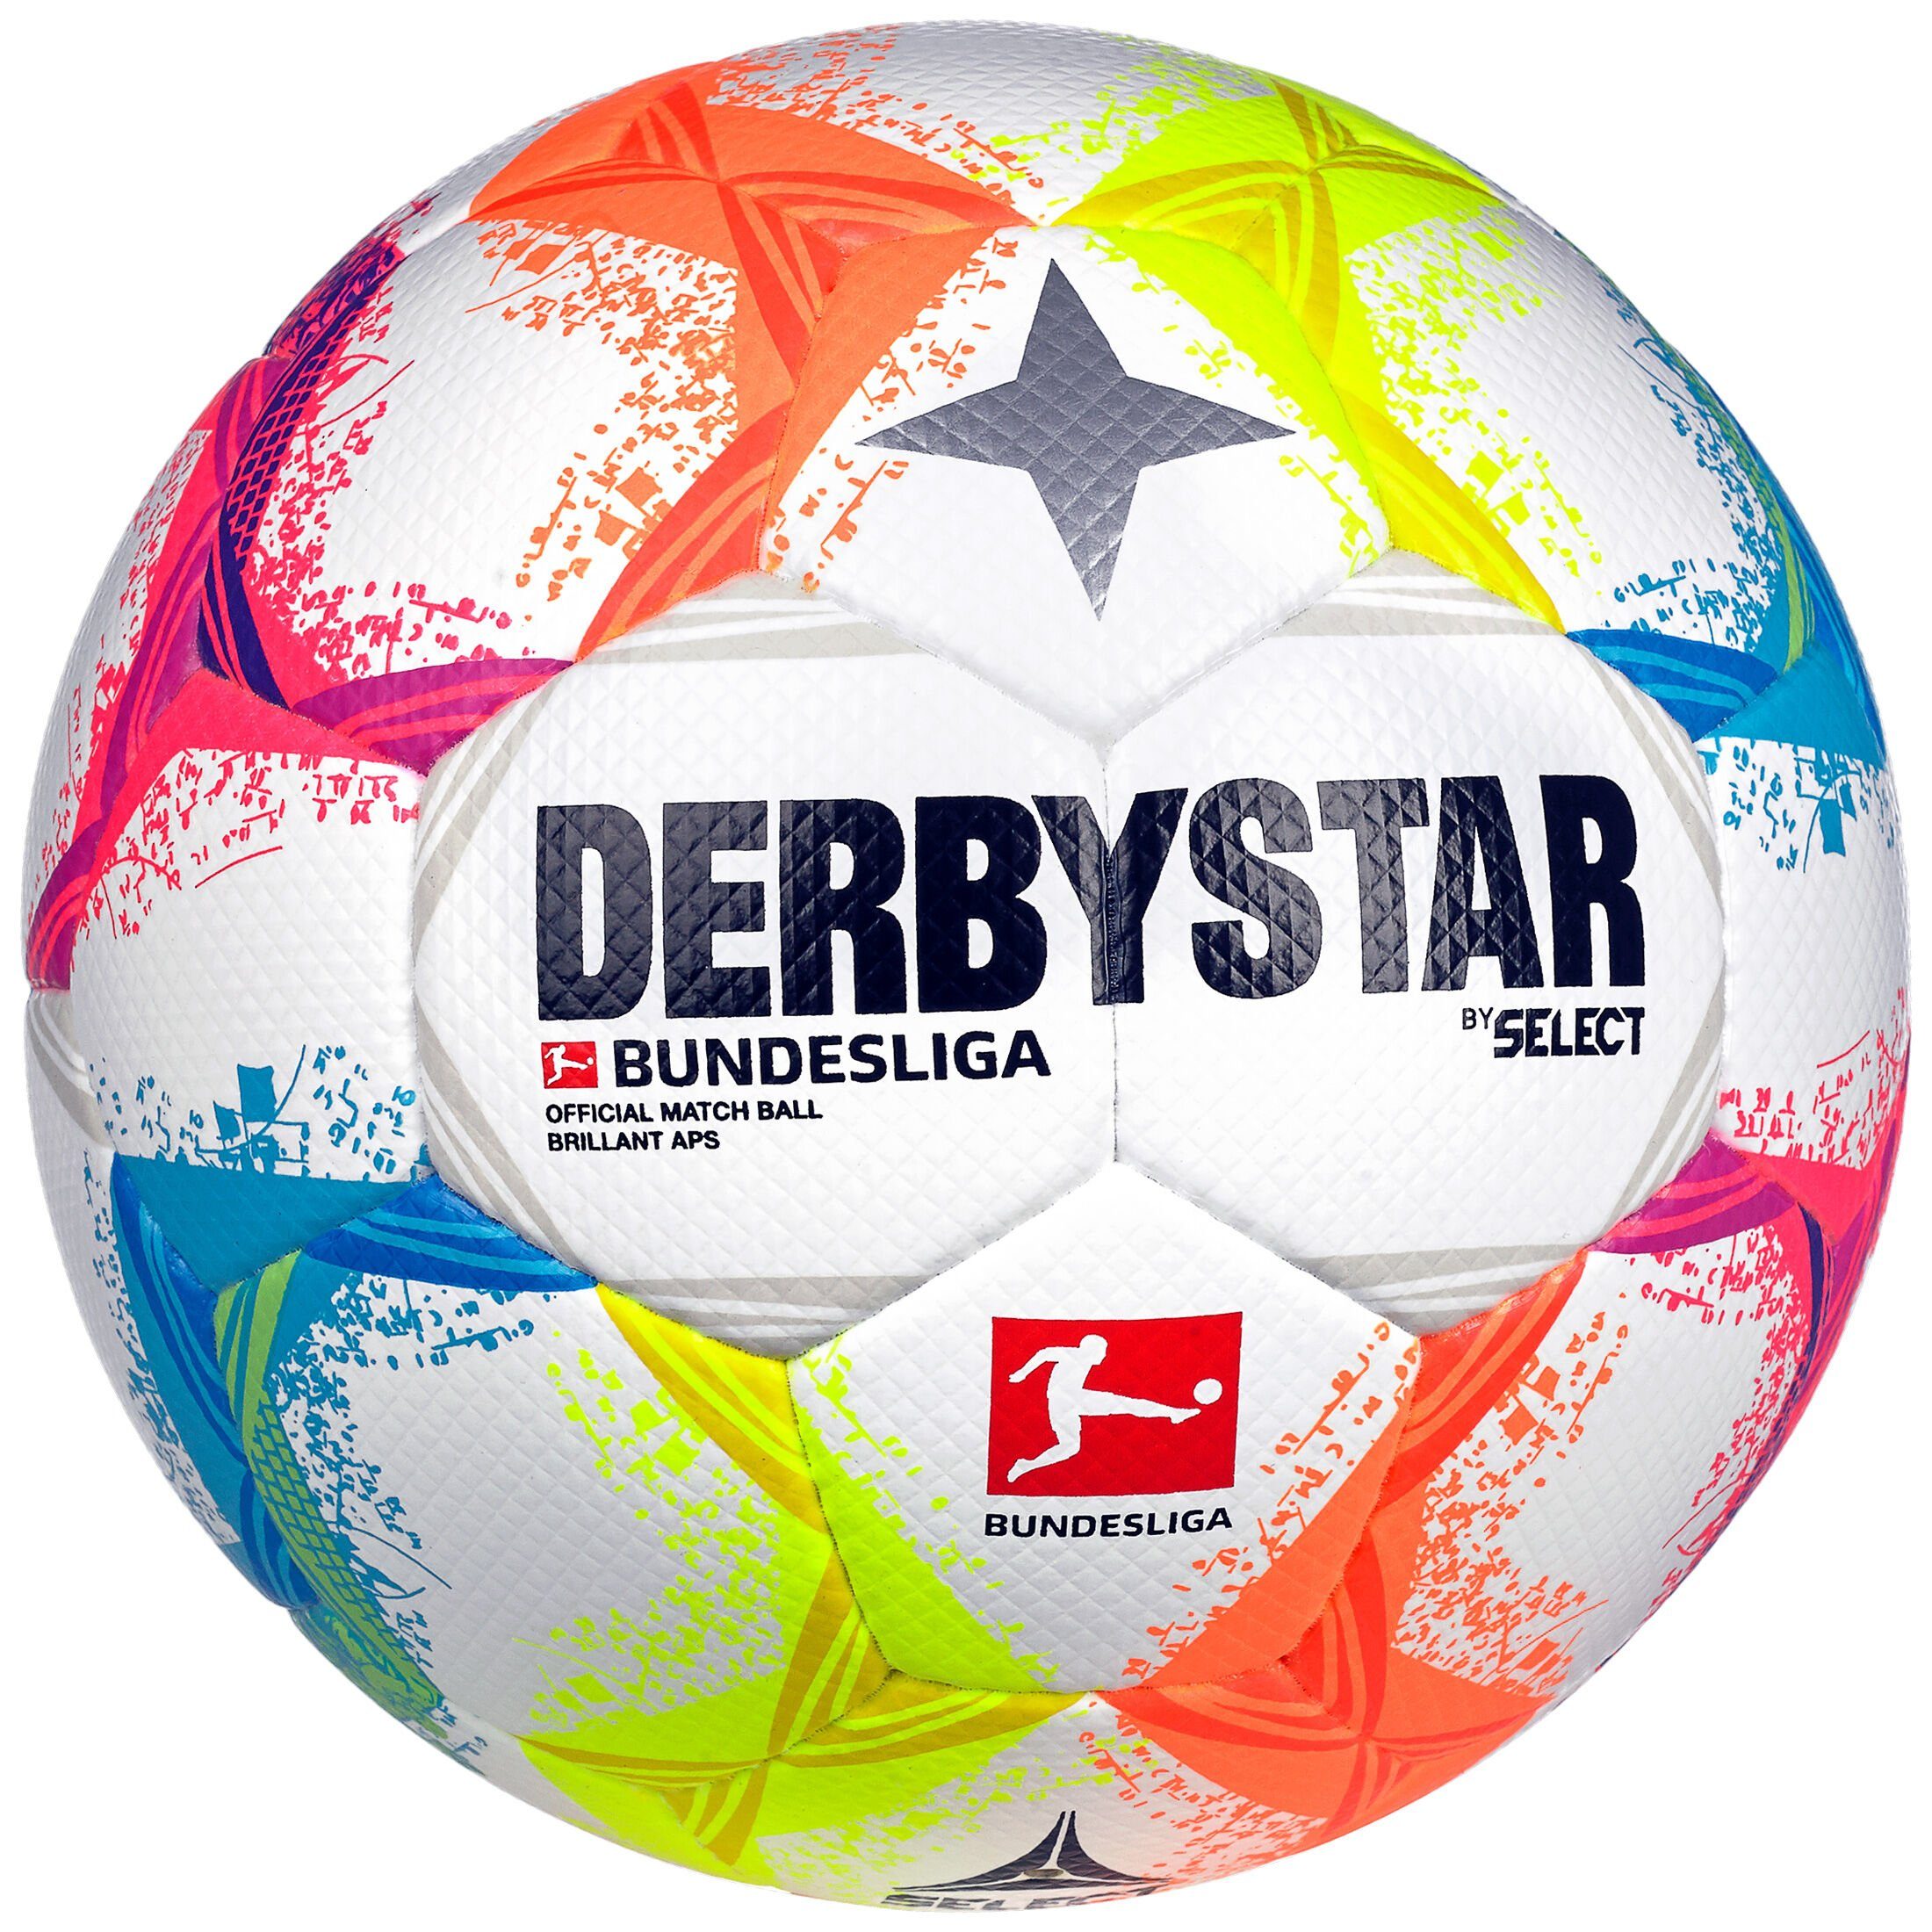 Derbystar Fußball Bundesliga Brillant APS v22 Fußball